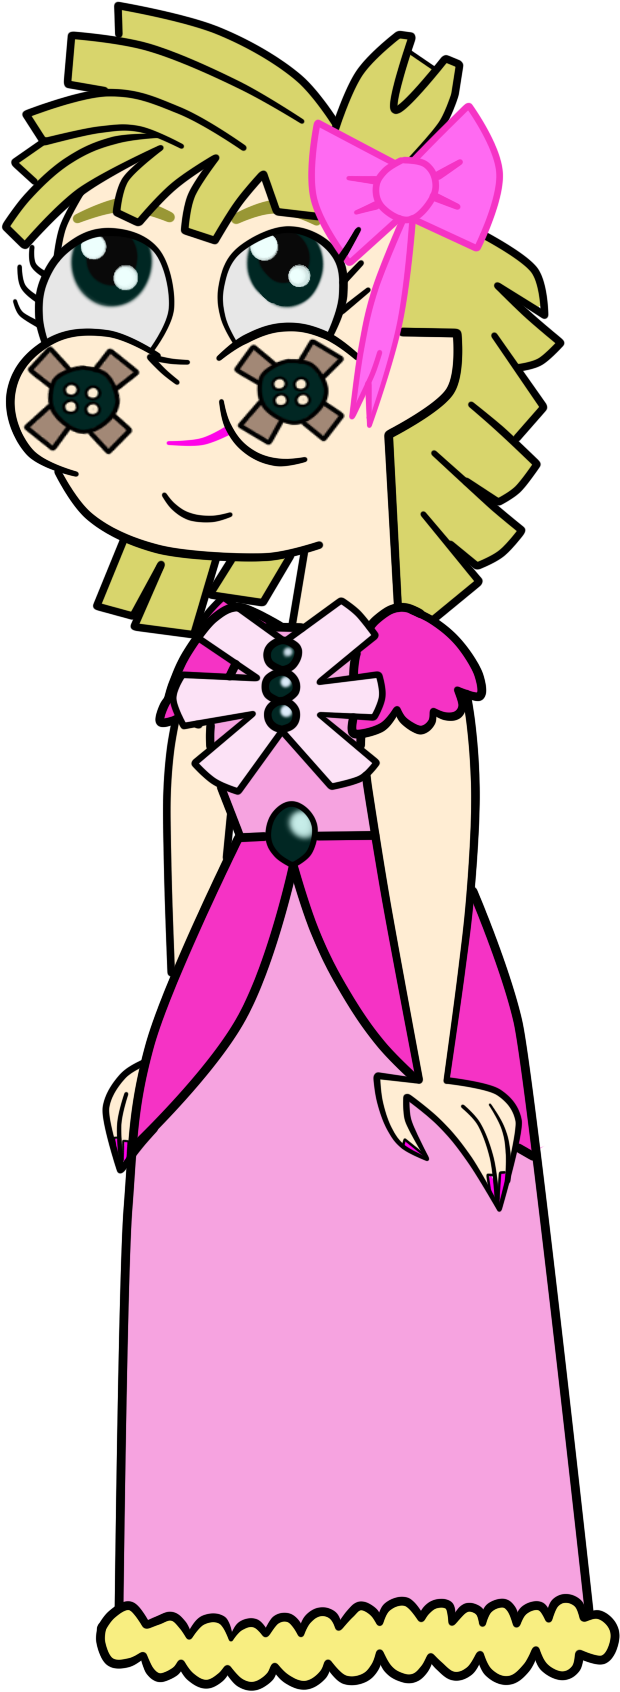 The Princess/rag-doll Girl In Td Style By Alegwen714 - Cartoon (1007x1887)